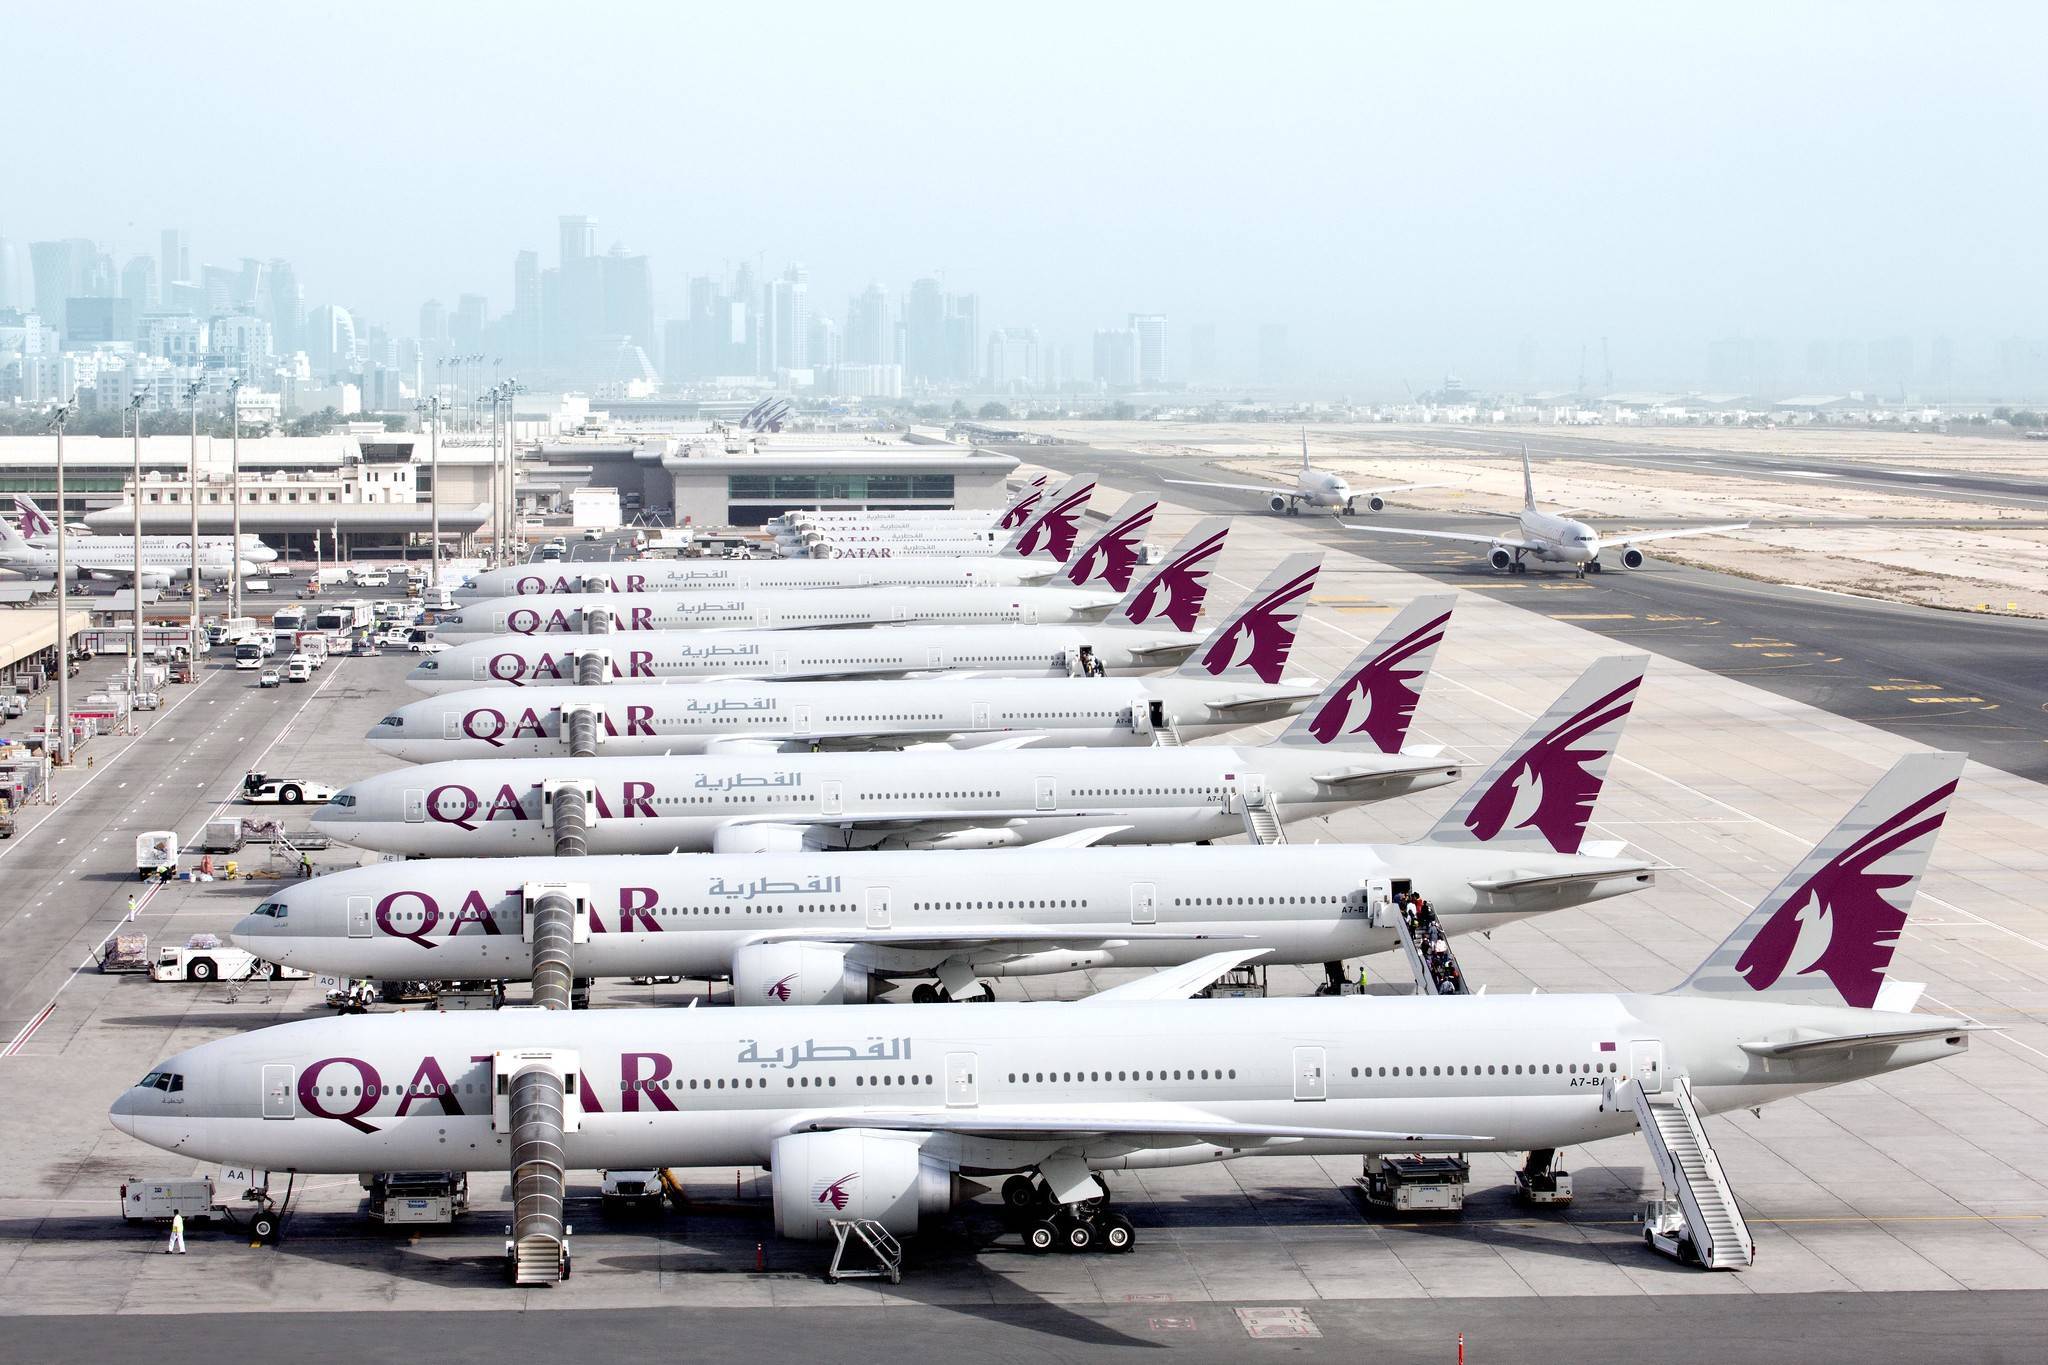 Горячая линия qatar airways (катарские авиалинии): как связаться, написать жалобу в службу поддержки, войти в личный кабинет